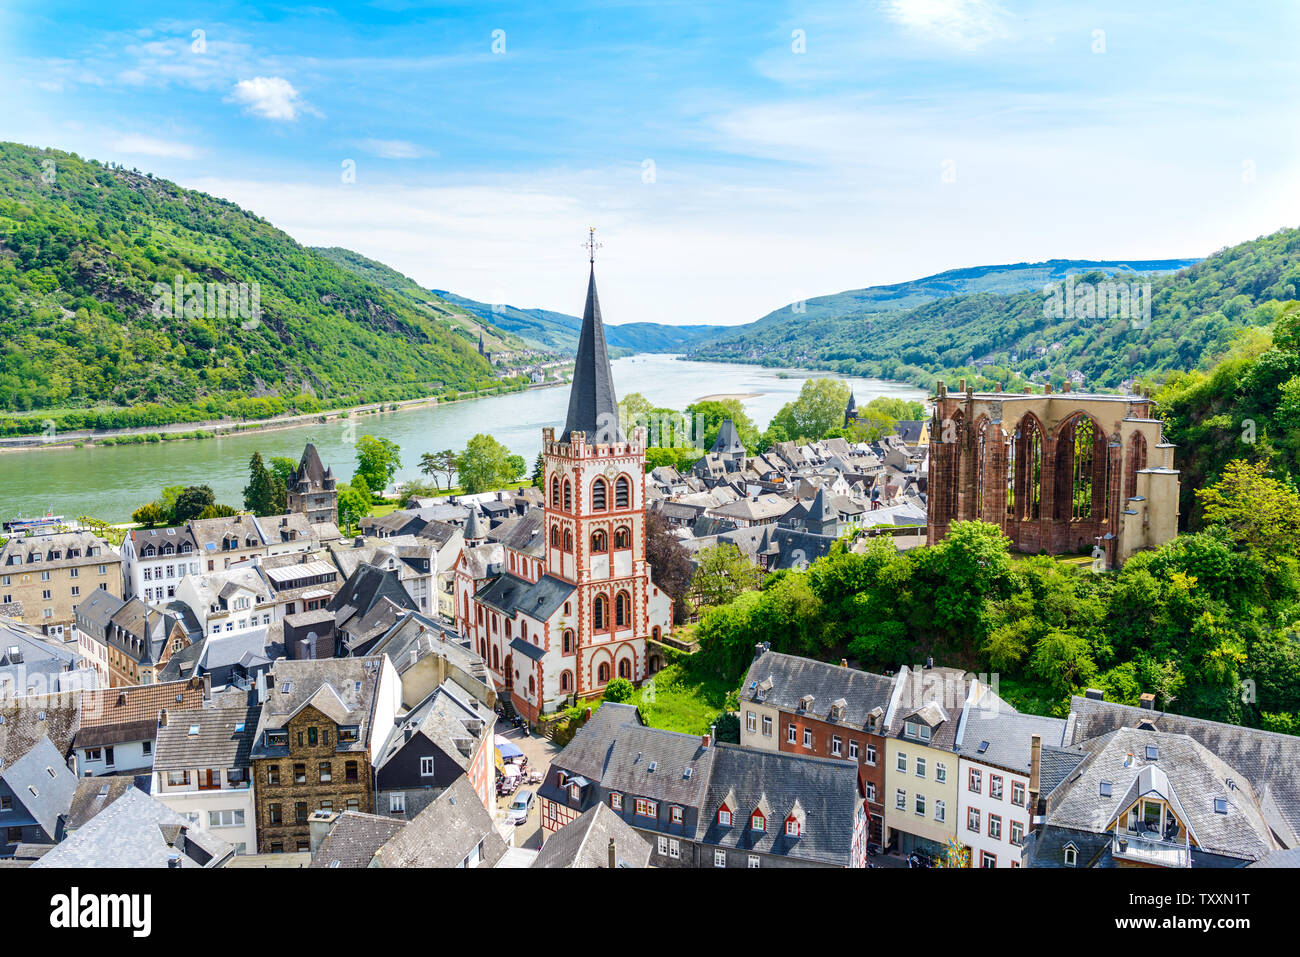 Bacharach am Rhein. Petite ville sur le Rhin moyen supérieur (Mittelrhein). Belle vue panoramique vue aérienne Carte Postale. Rhénanie-palatinat, Allemagne Banque D'Images